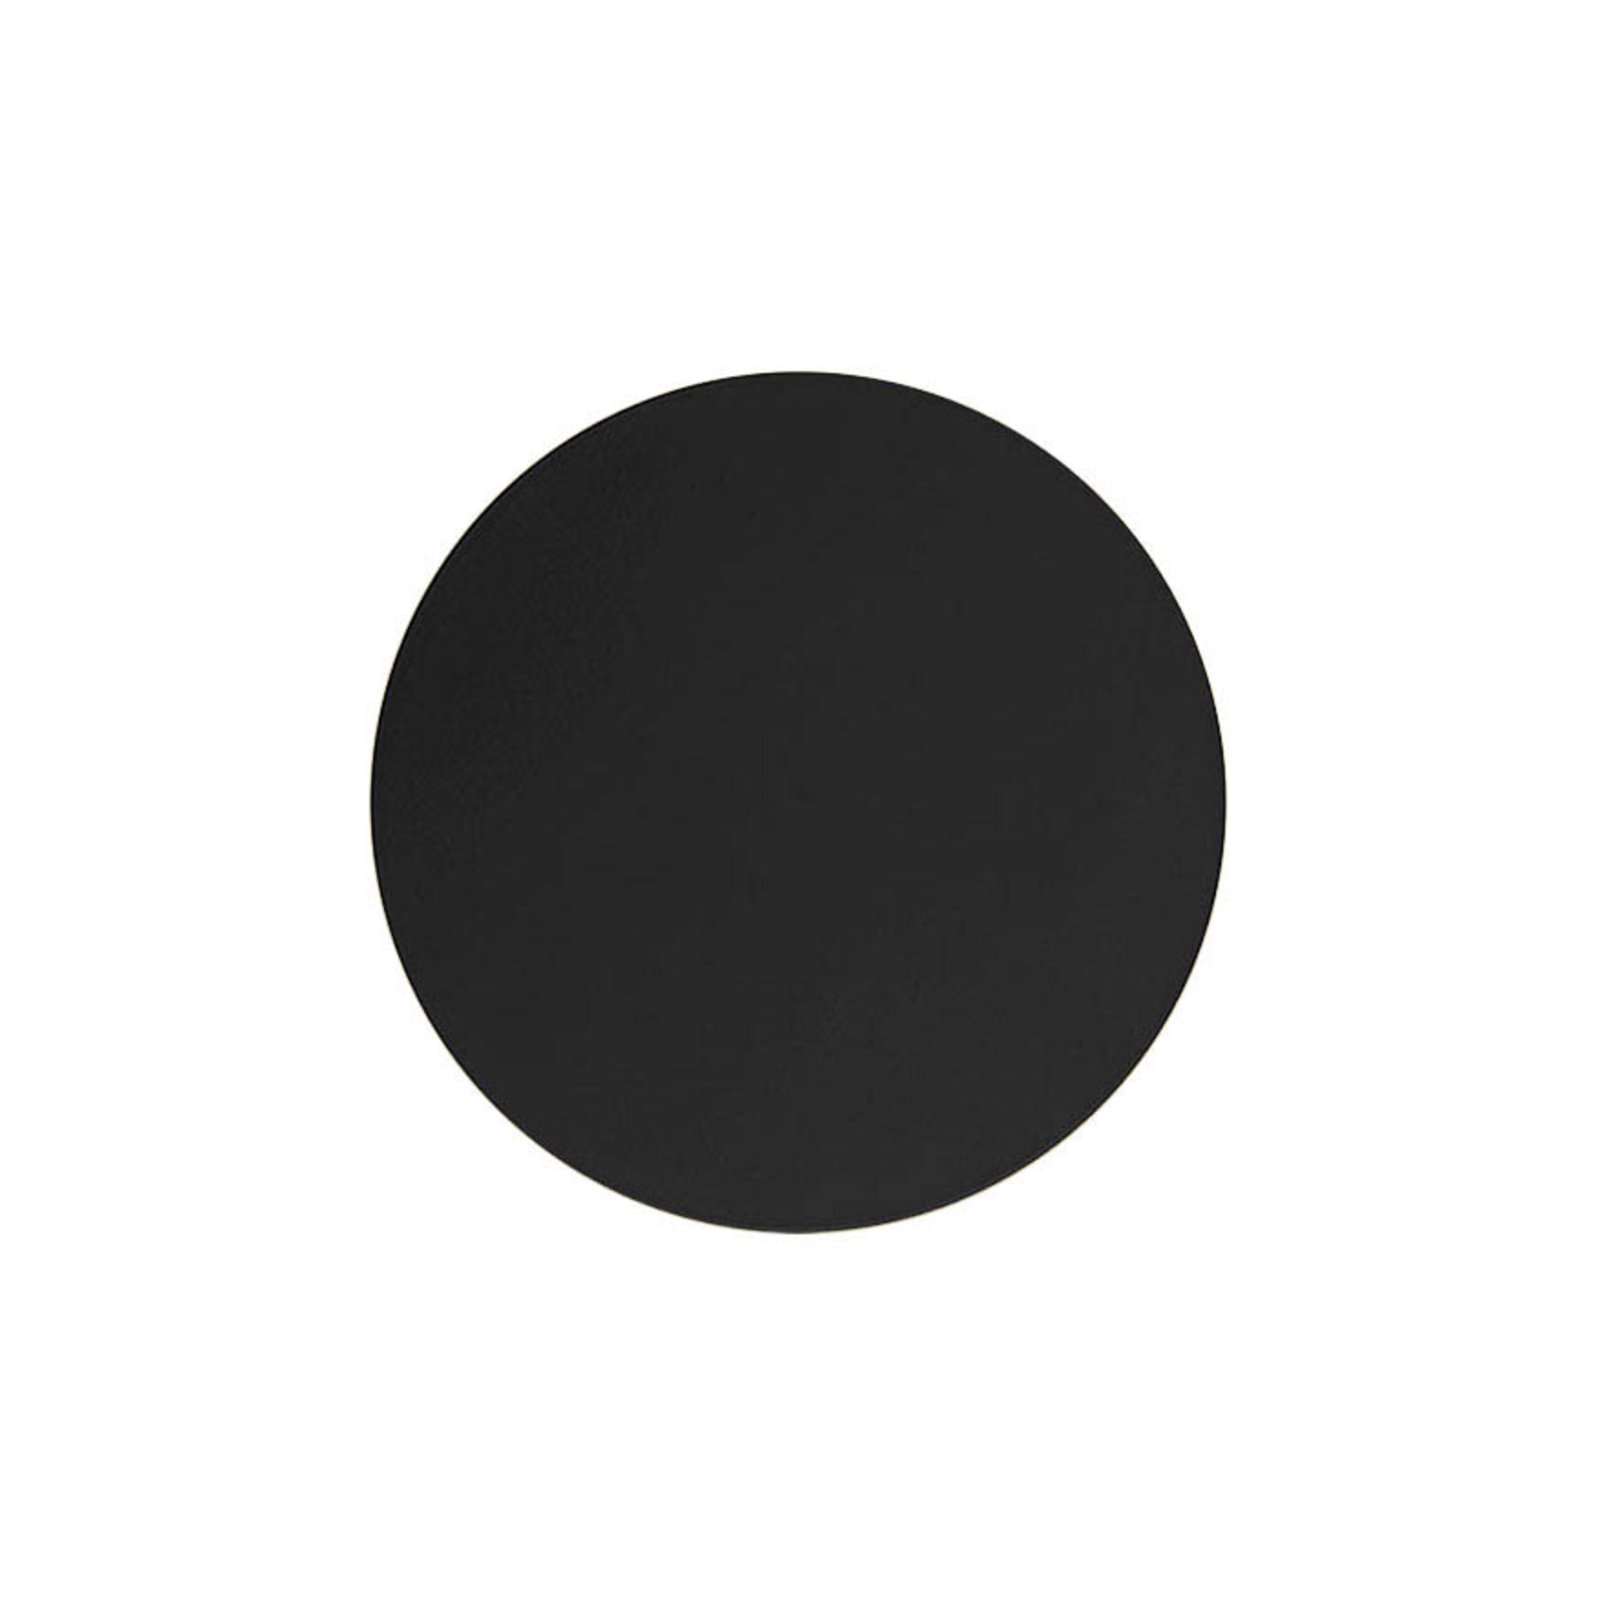 Lunia Nové nástenné svietidlo, čierne, Ø 40 cm